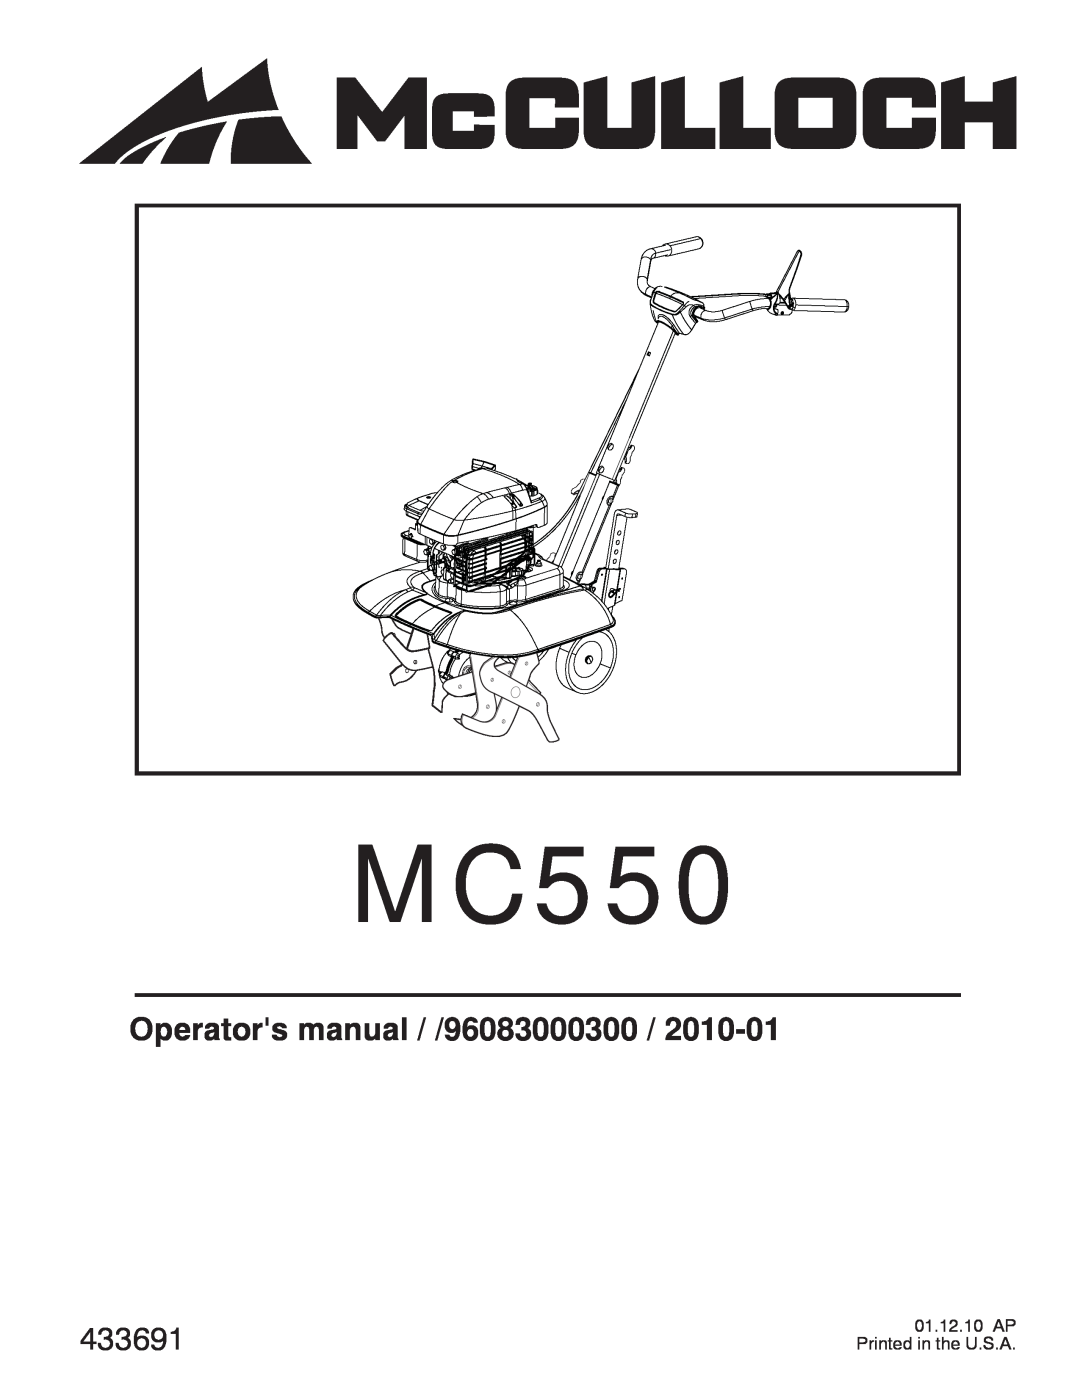 McCulloch MC550 manual Operators manual / /96083000300, 433691 